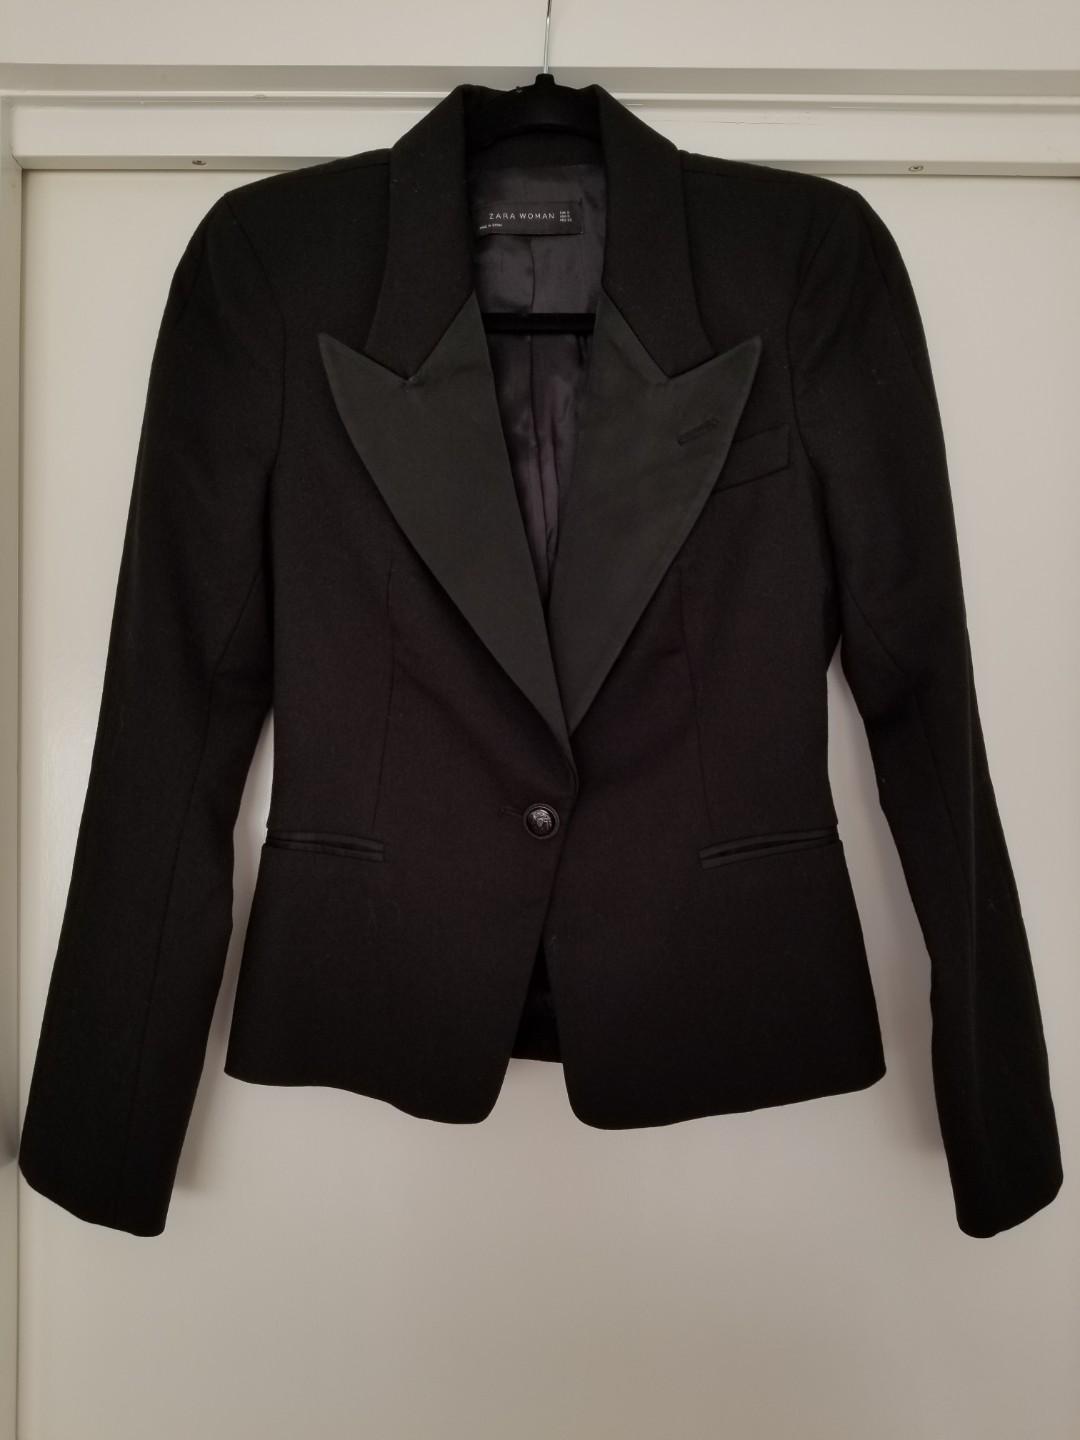 zara women's suit jackets